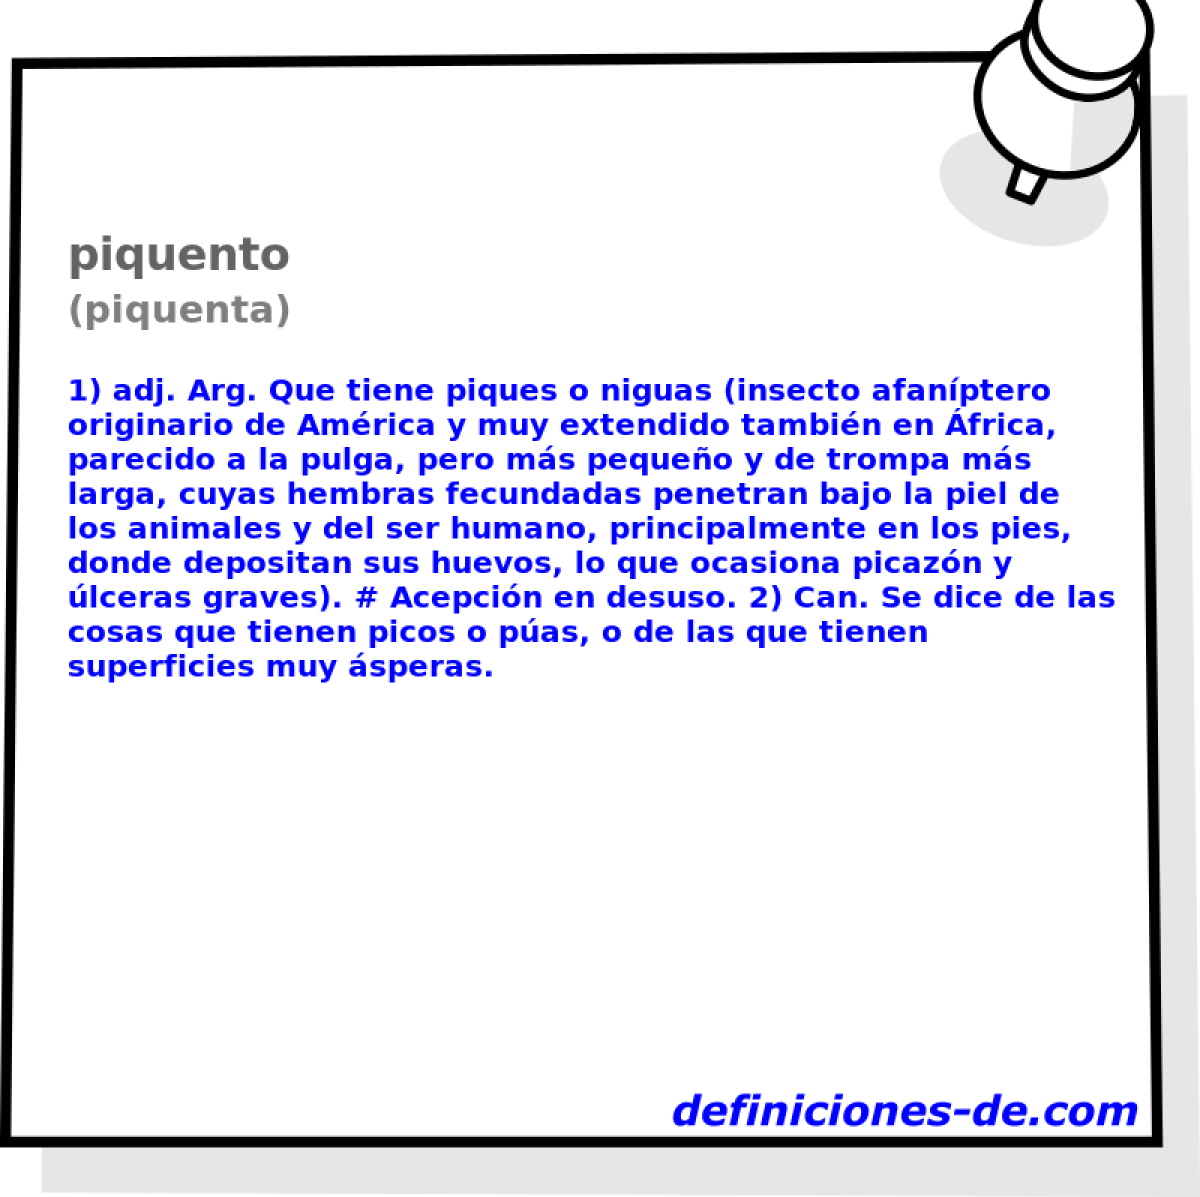 piquento (piquenta)